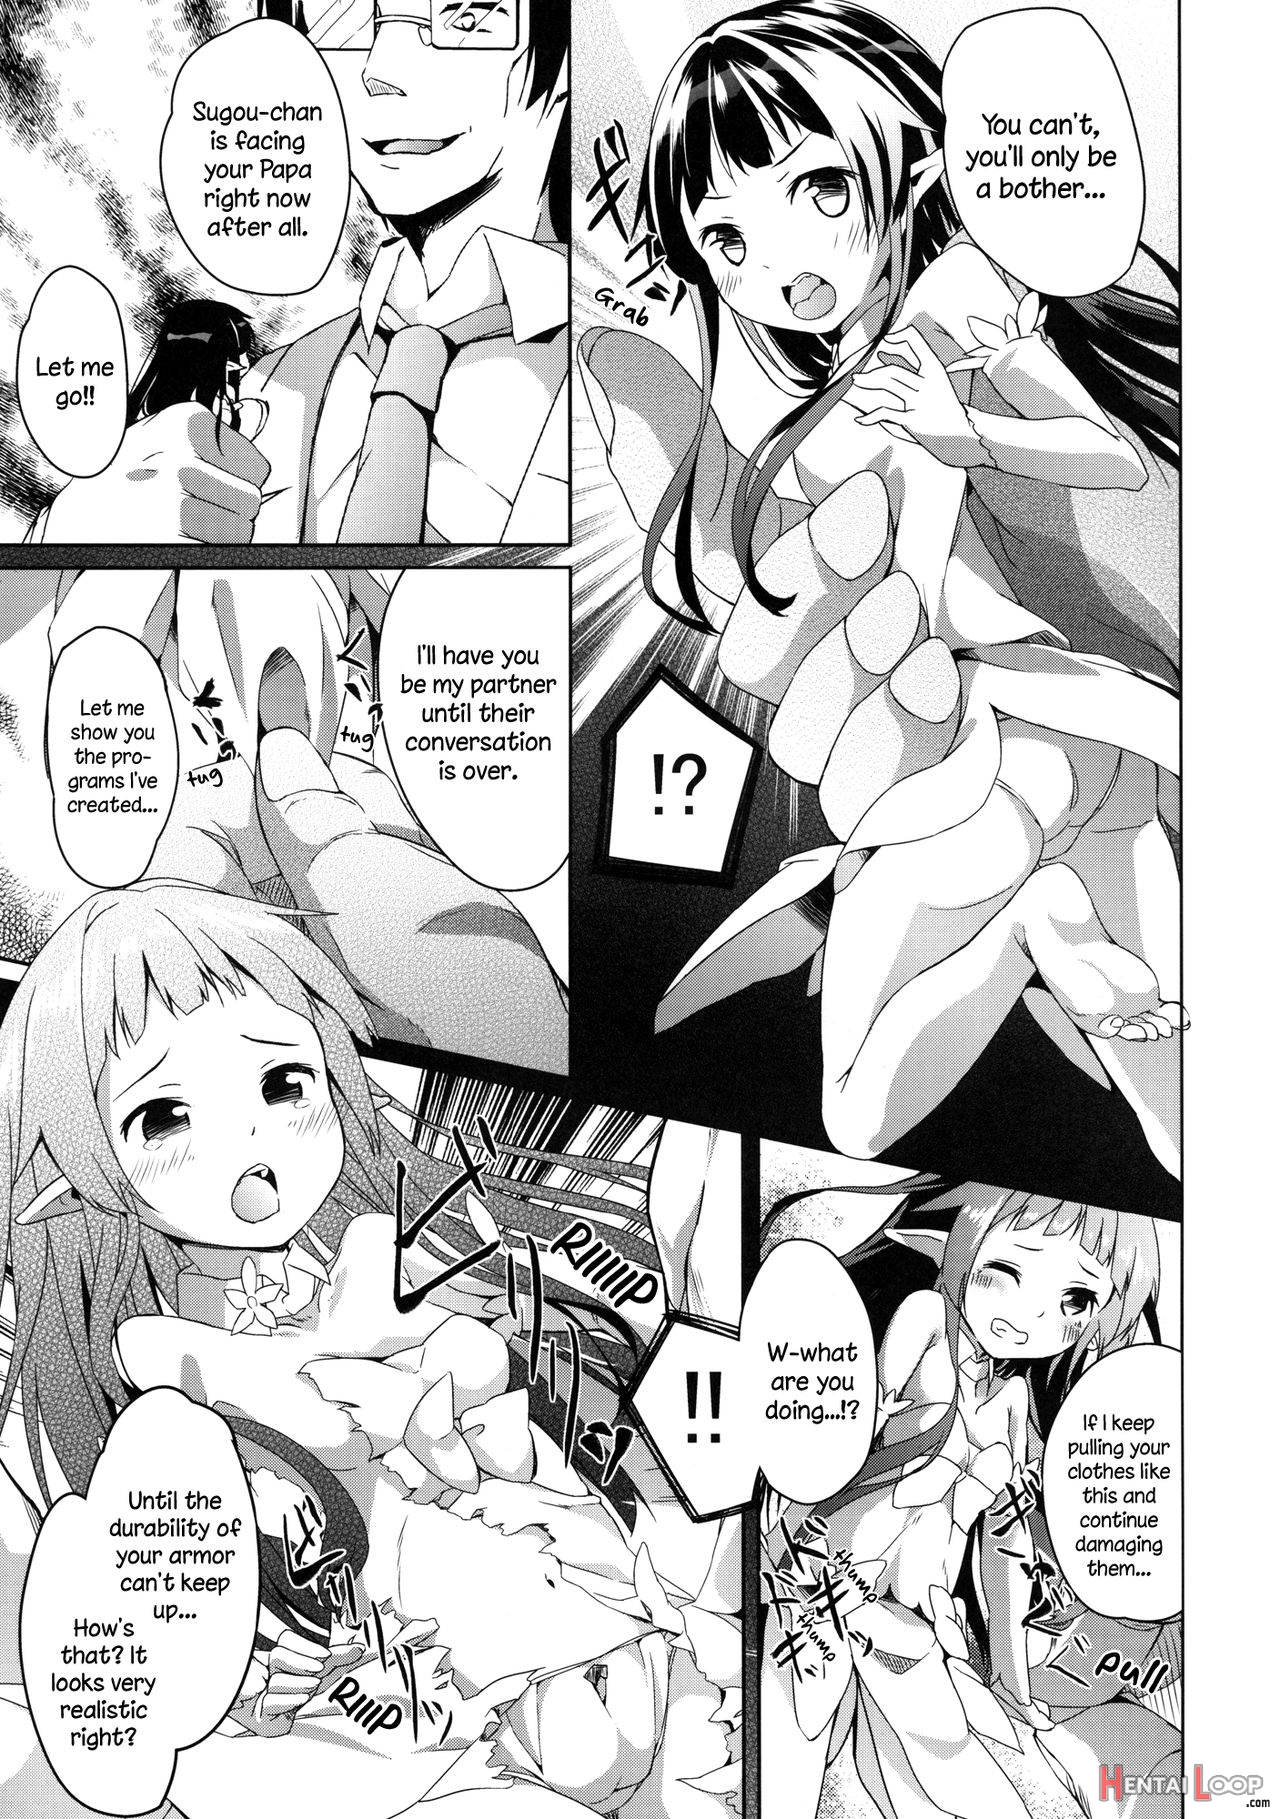 Yui-chan Deformation! page 5